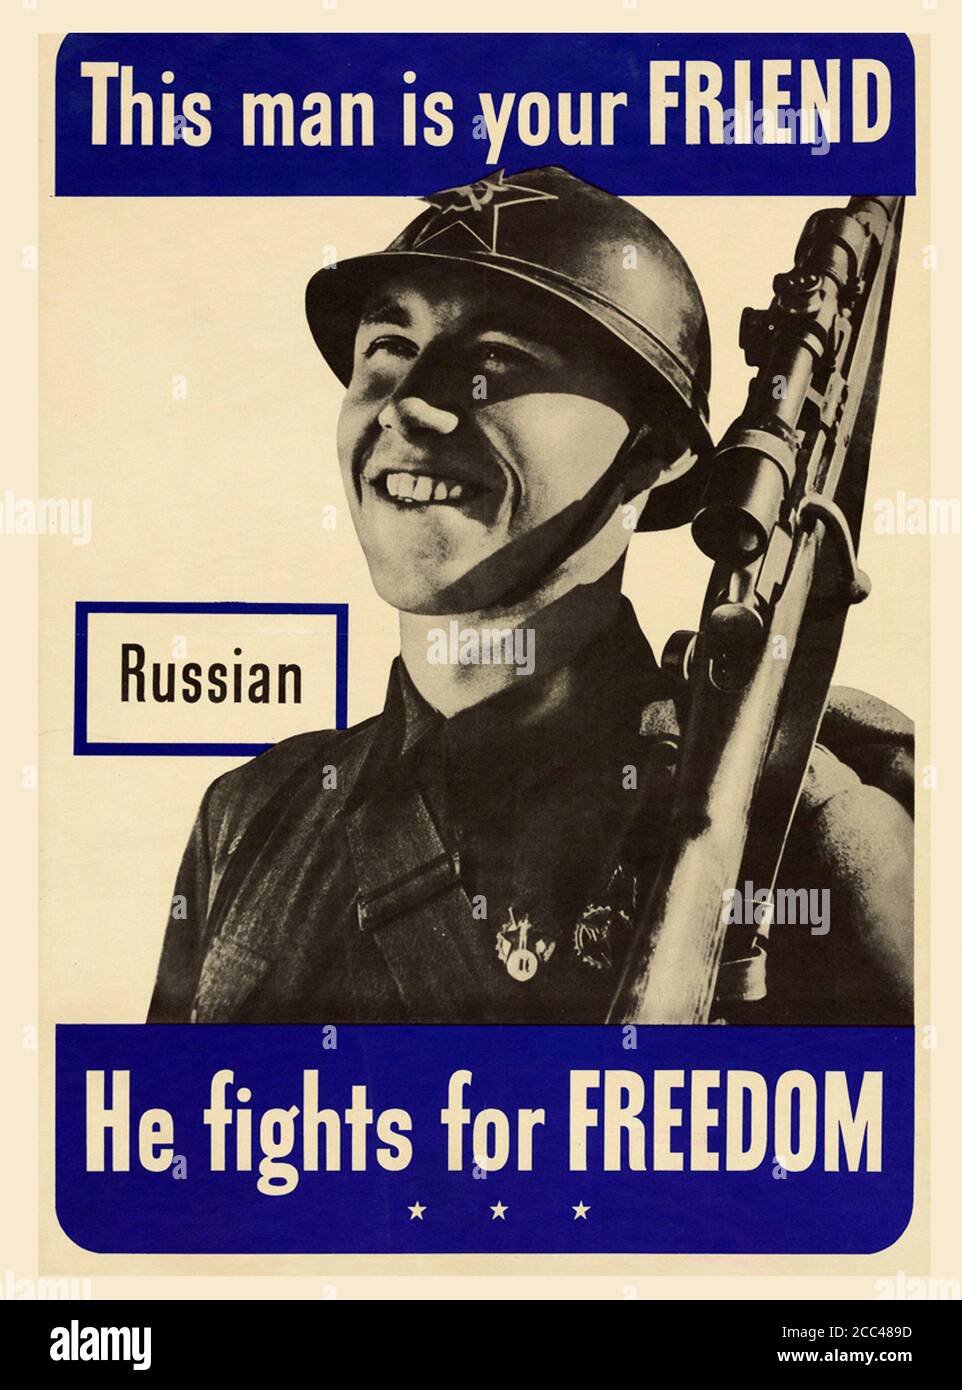 Amerikanisches Propagandaplakat, das um Unterstützung für Amerikas Verbündete aufruft. Russen. Dieser Mann ist dein Freund. USA. 1942 Stockfoto